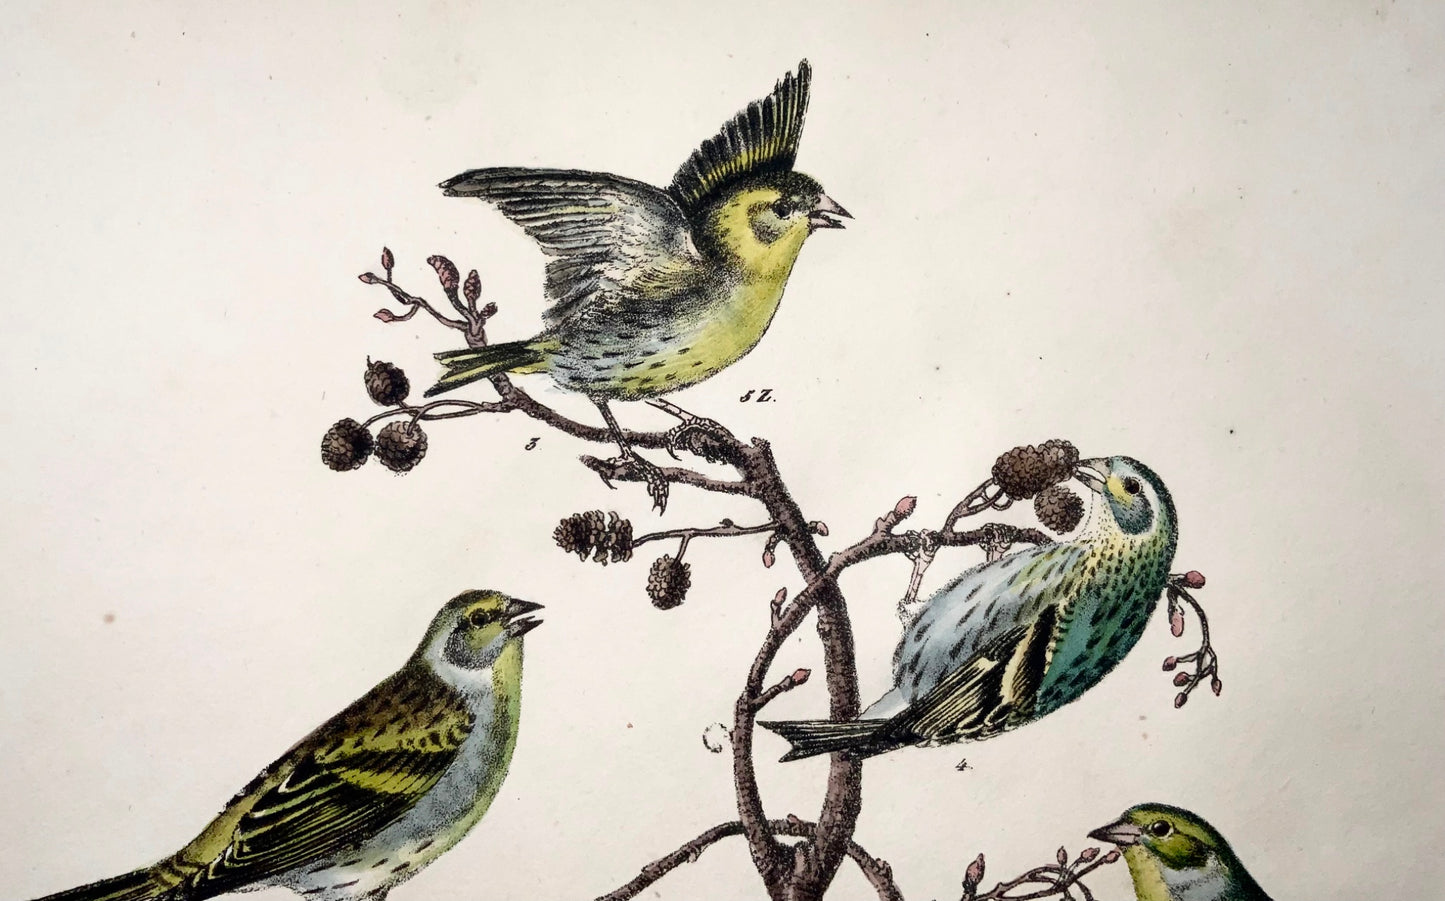 1819 Canari, pinson, oiseaux chanteurs, ornithologie, Strack, lithographie à la craie, couleur à la main